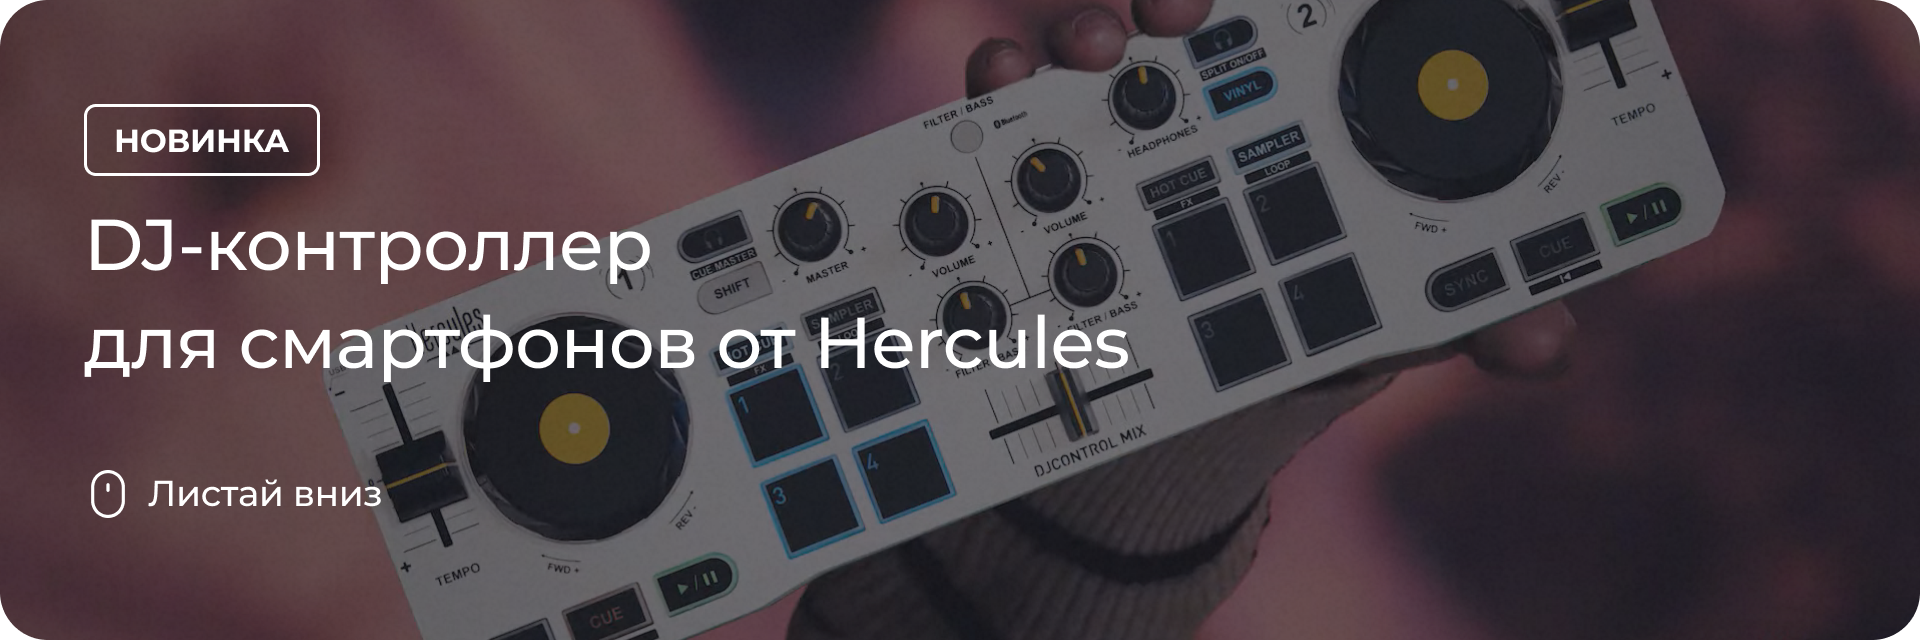 DJControl Mix для смартфонов от Hercules